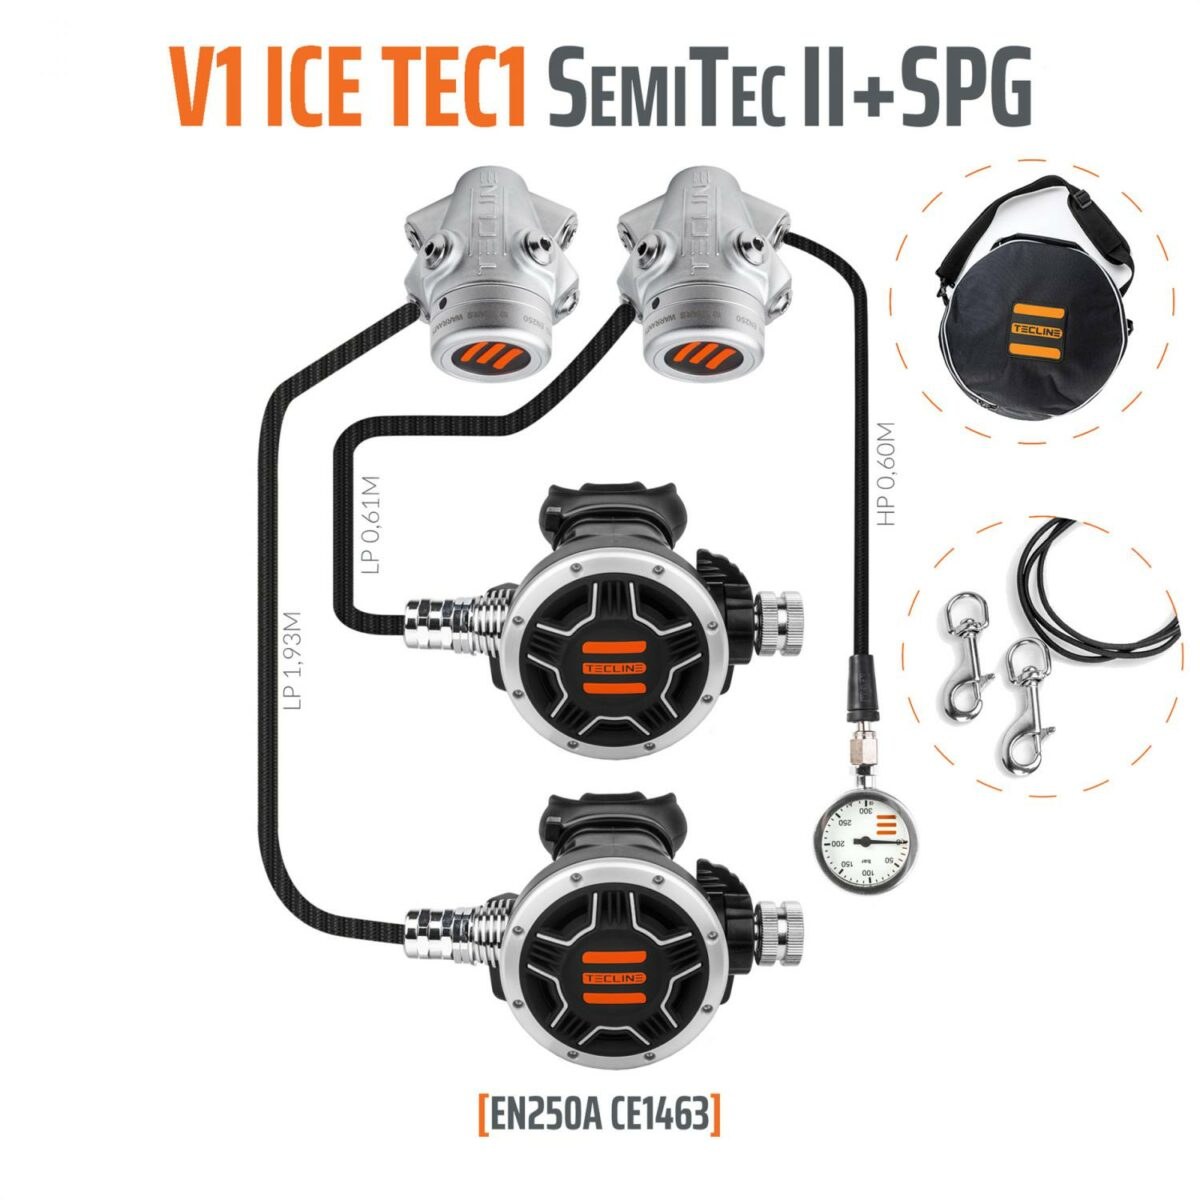 Tecline Regulátor V1 Ice Tec1 Semitec Ii En250:2014